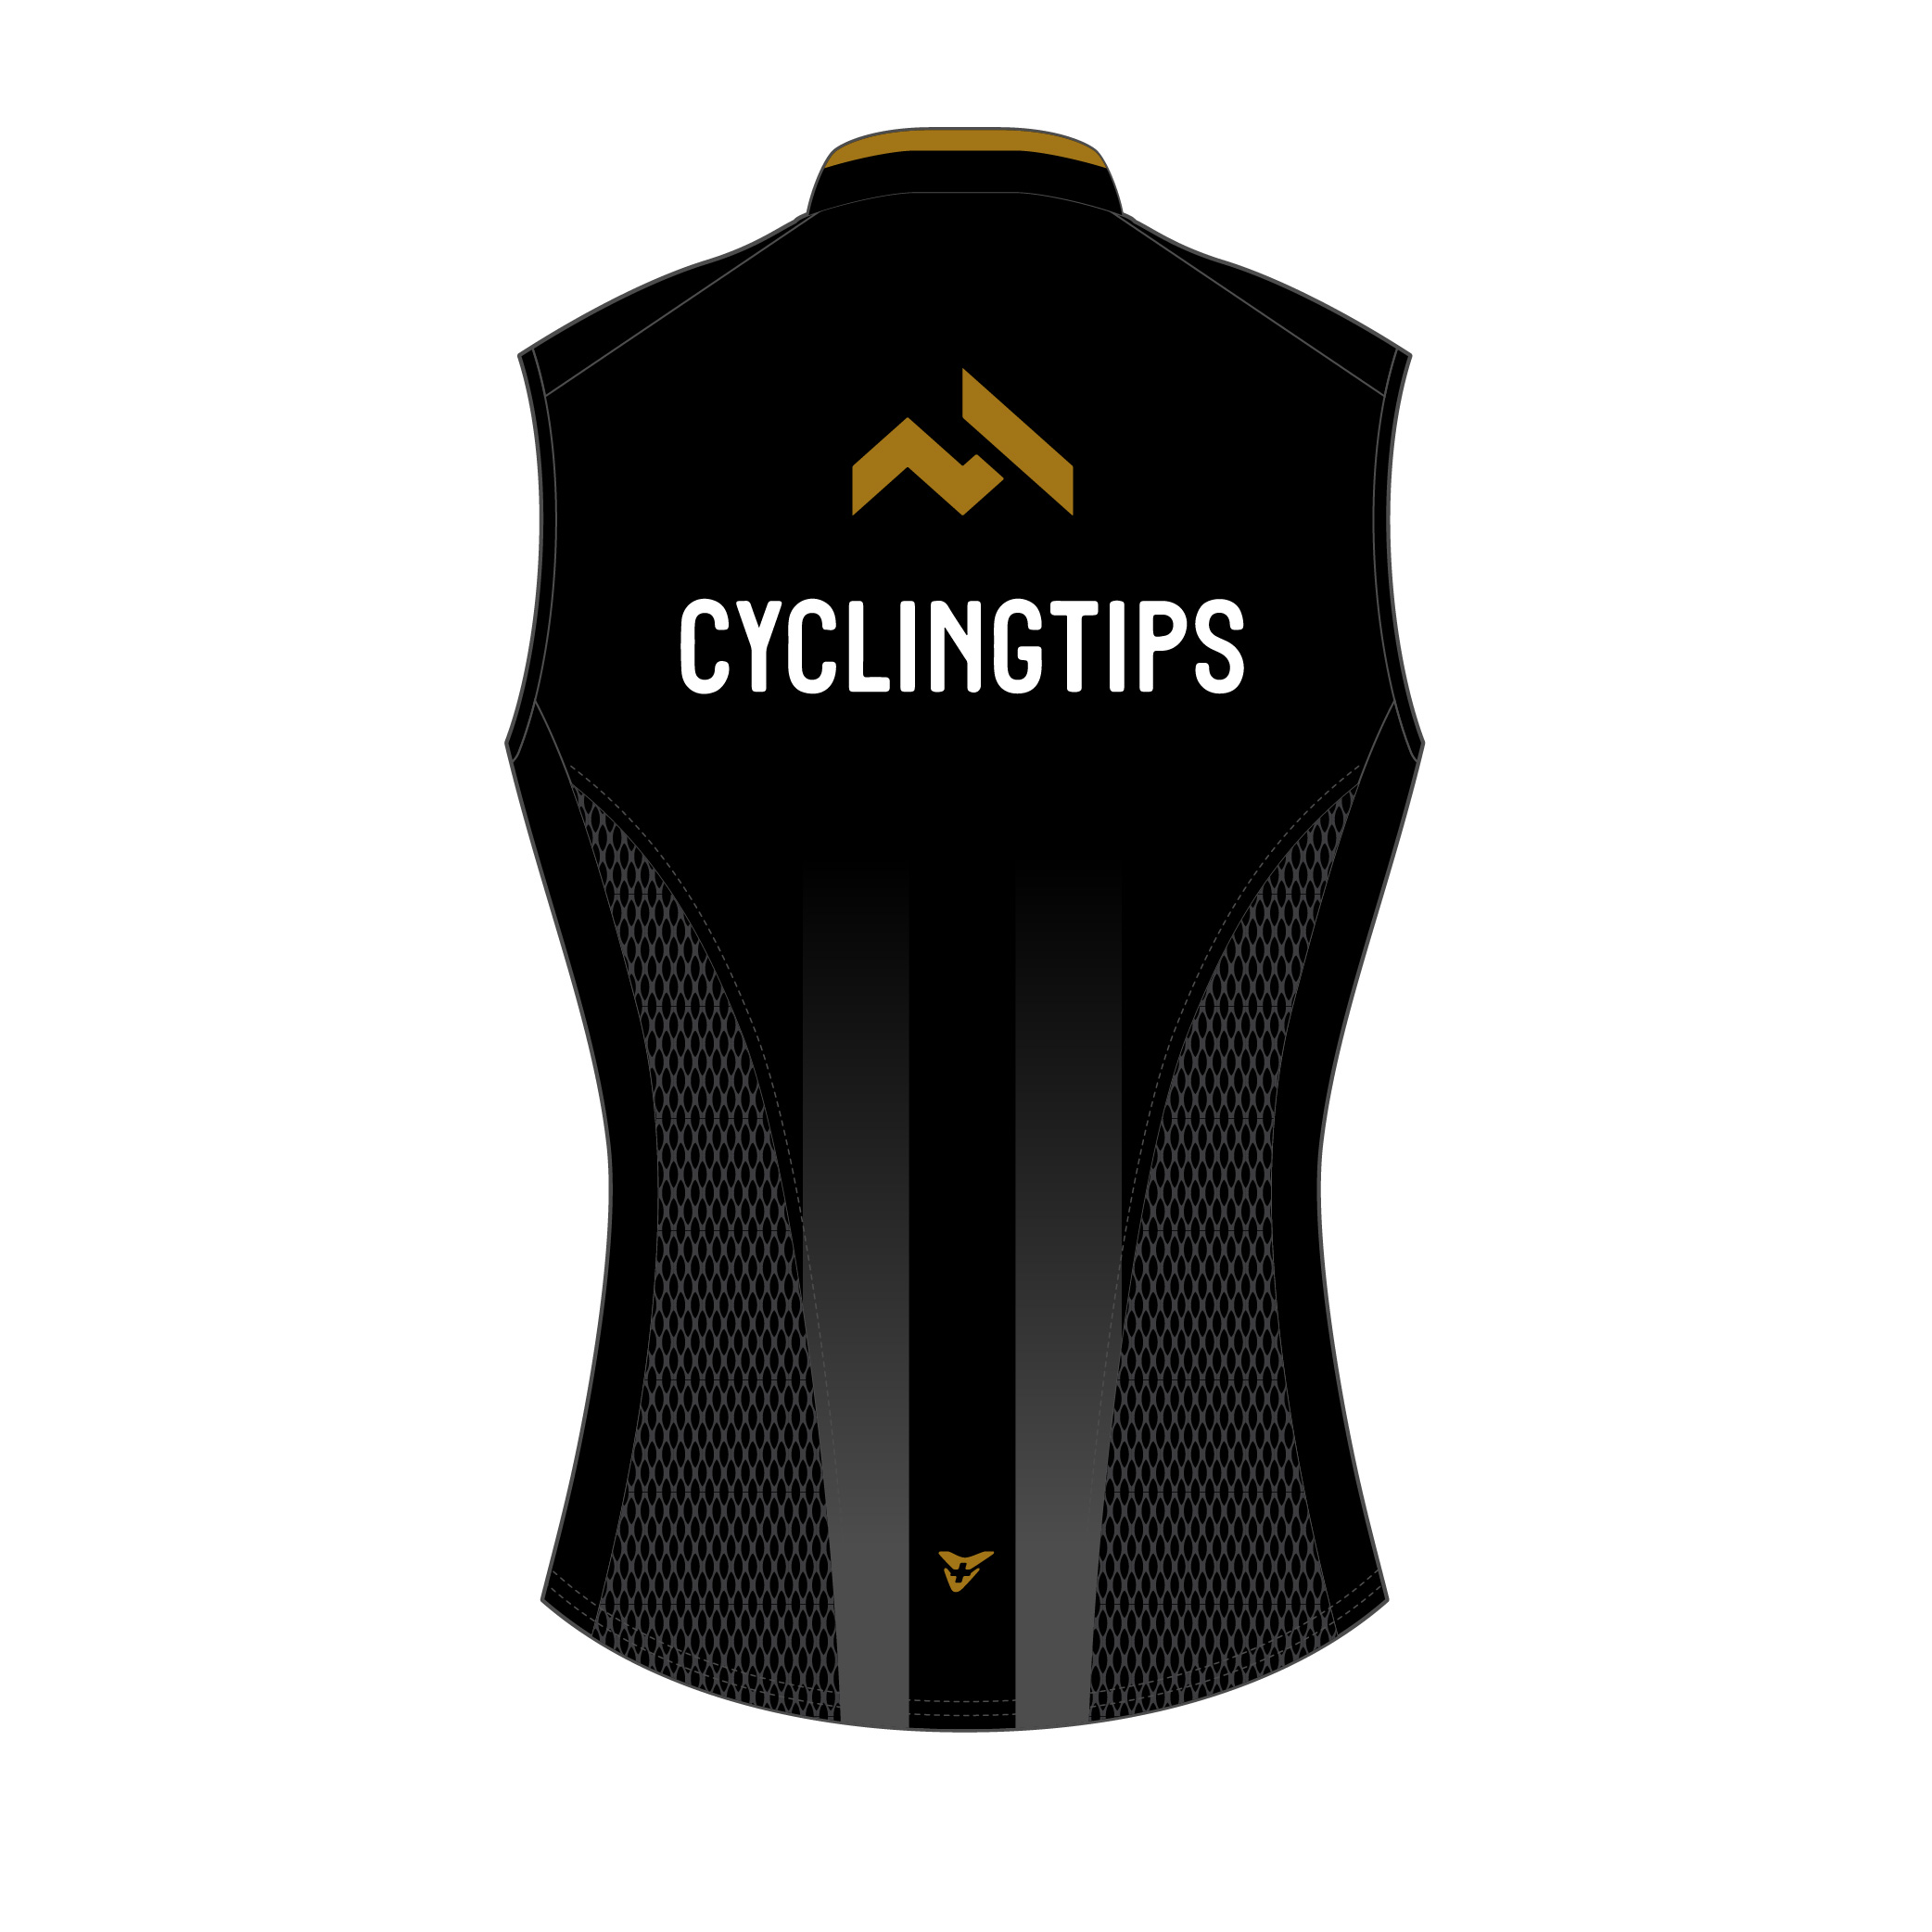 cycling-tips-22-s-53-0614-black-gold-top-back-2.jpg